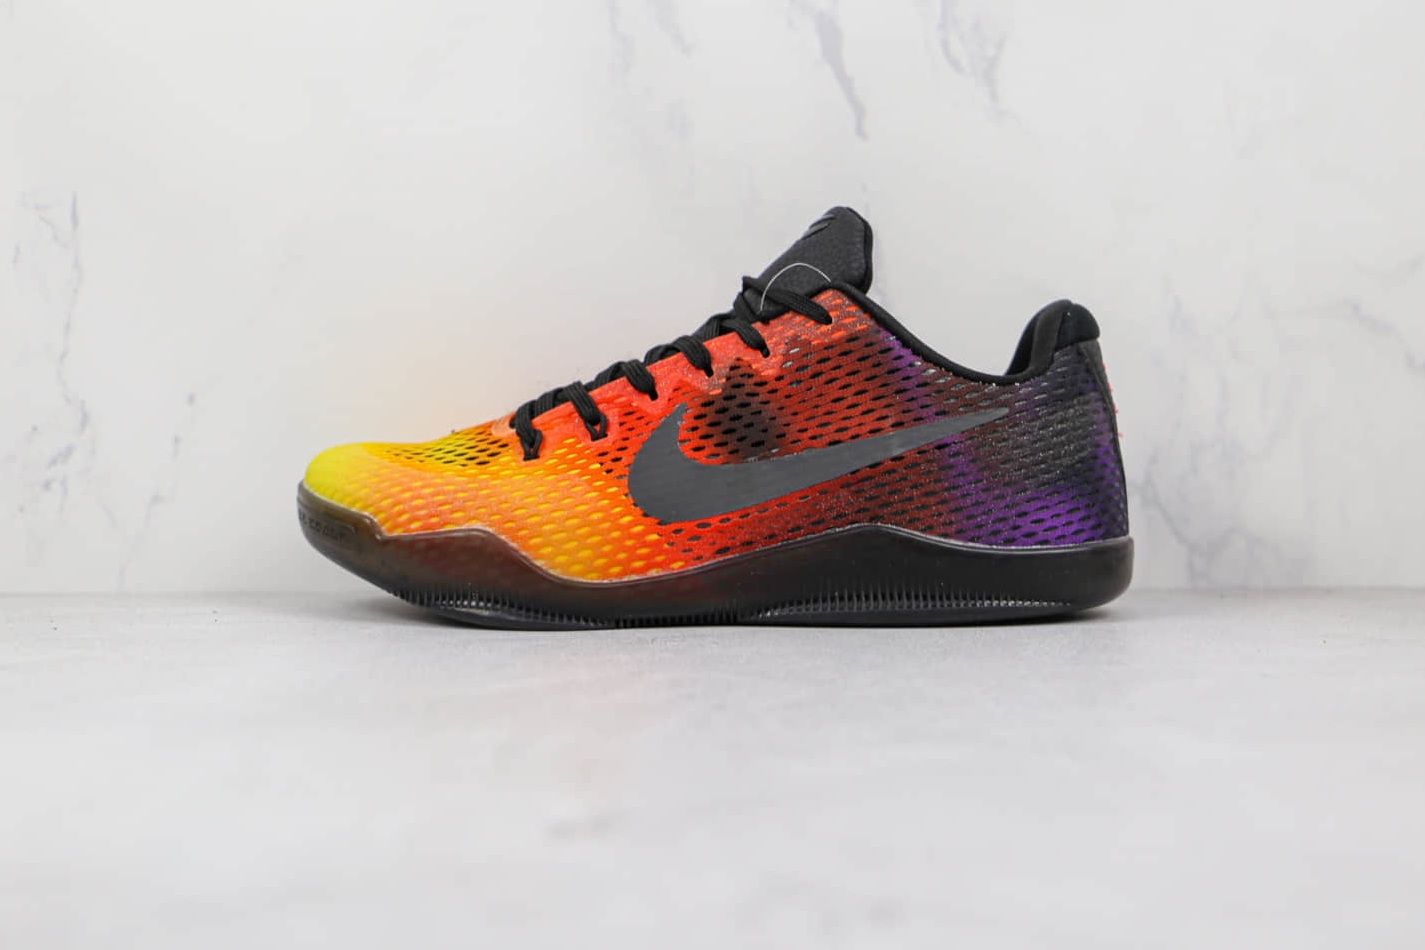 Nike Kobe 11 EP 836184-805 - Shop the Latest Kobe Bryant Signature Shoes